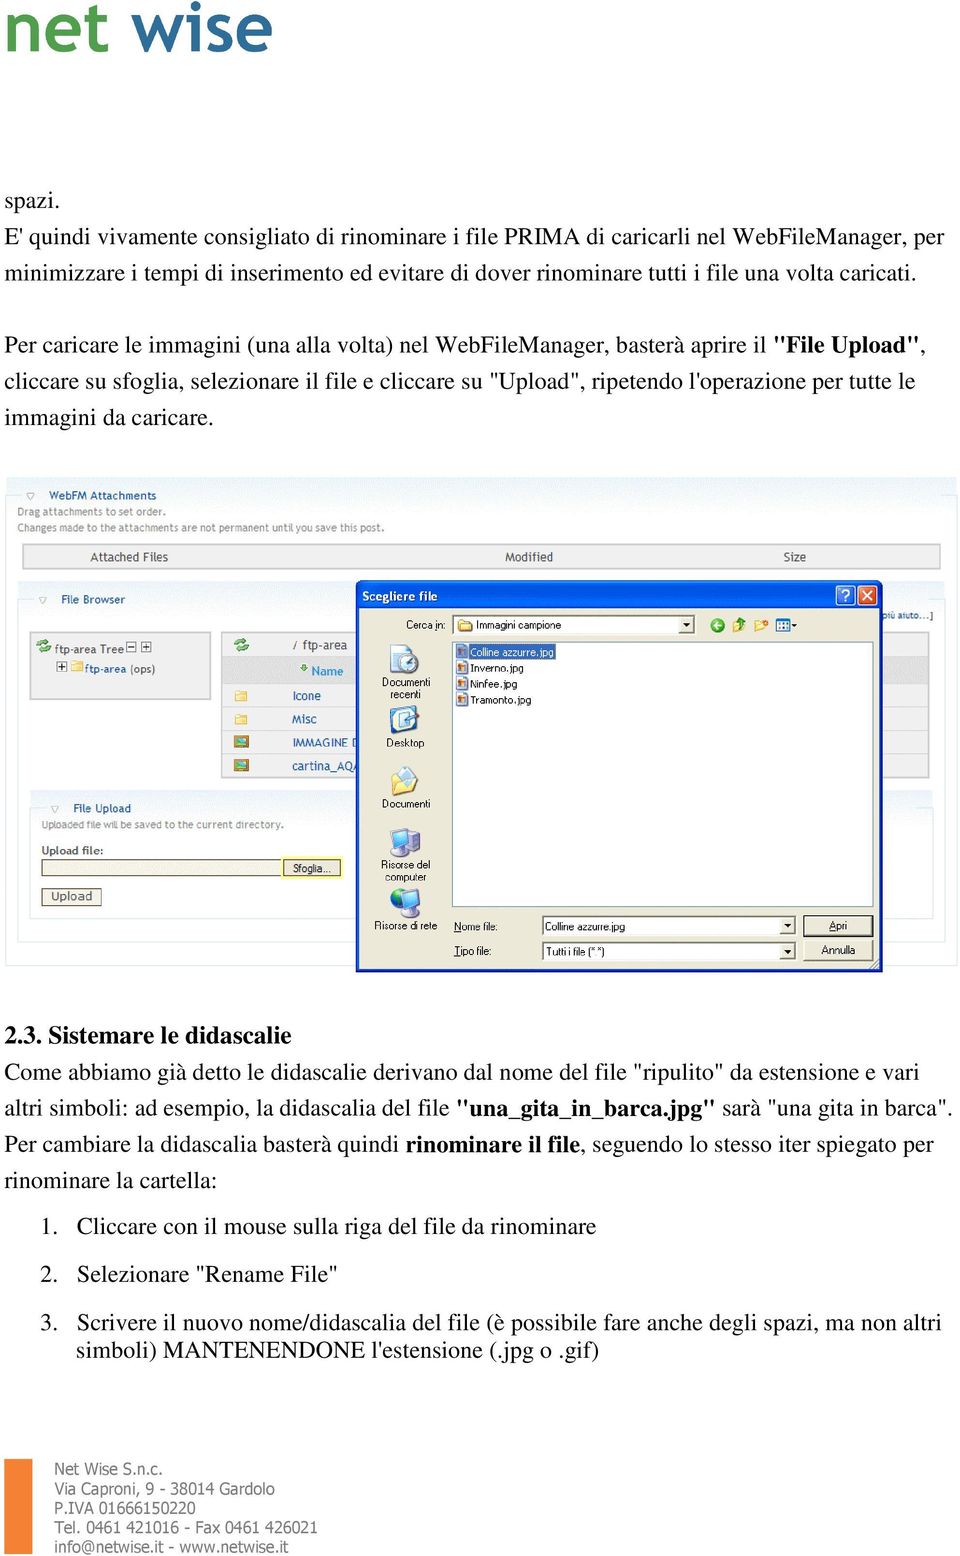 Per caricare le immagini (una alla volta) nel WebFileManager, basterà aprire il "File Upload", cliccare su sfoglia, selezionare il file e cliccare su "Upload", ripetendo l'operazione per tutte le